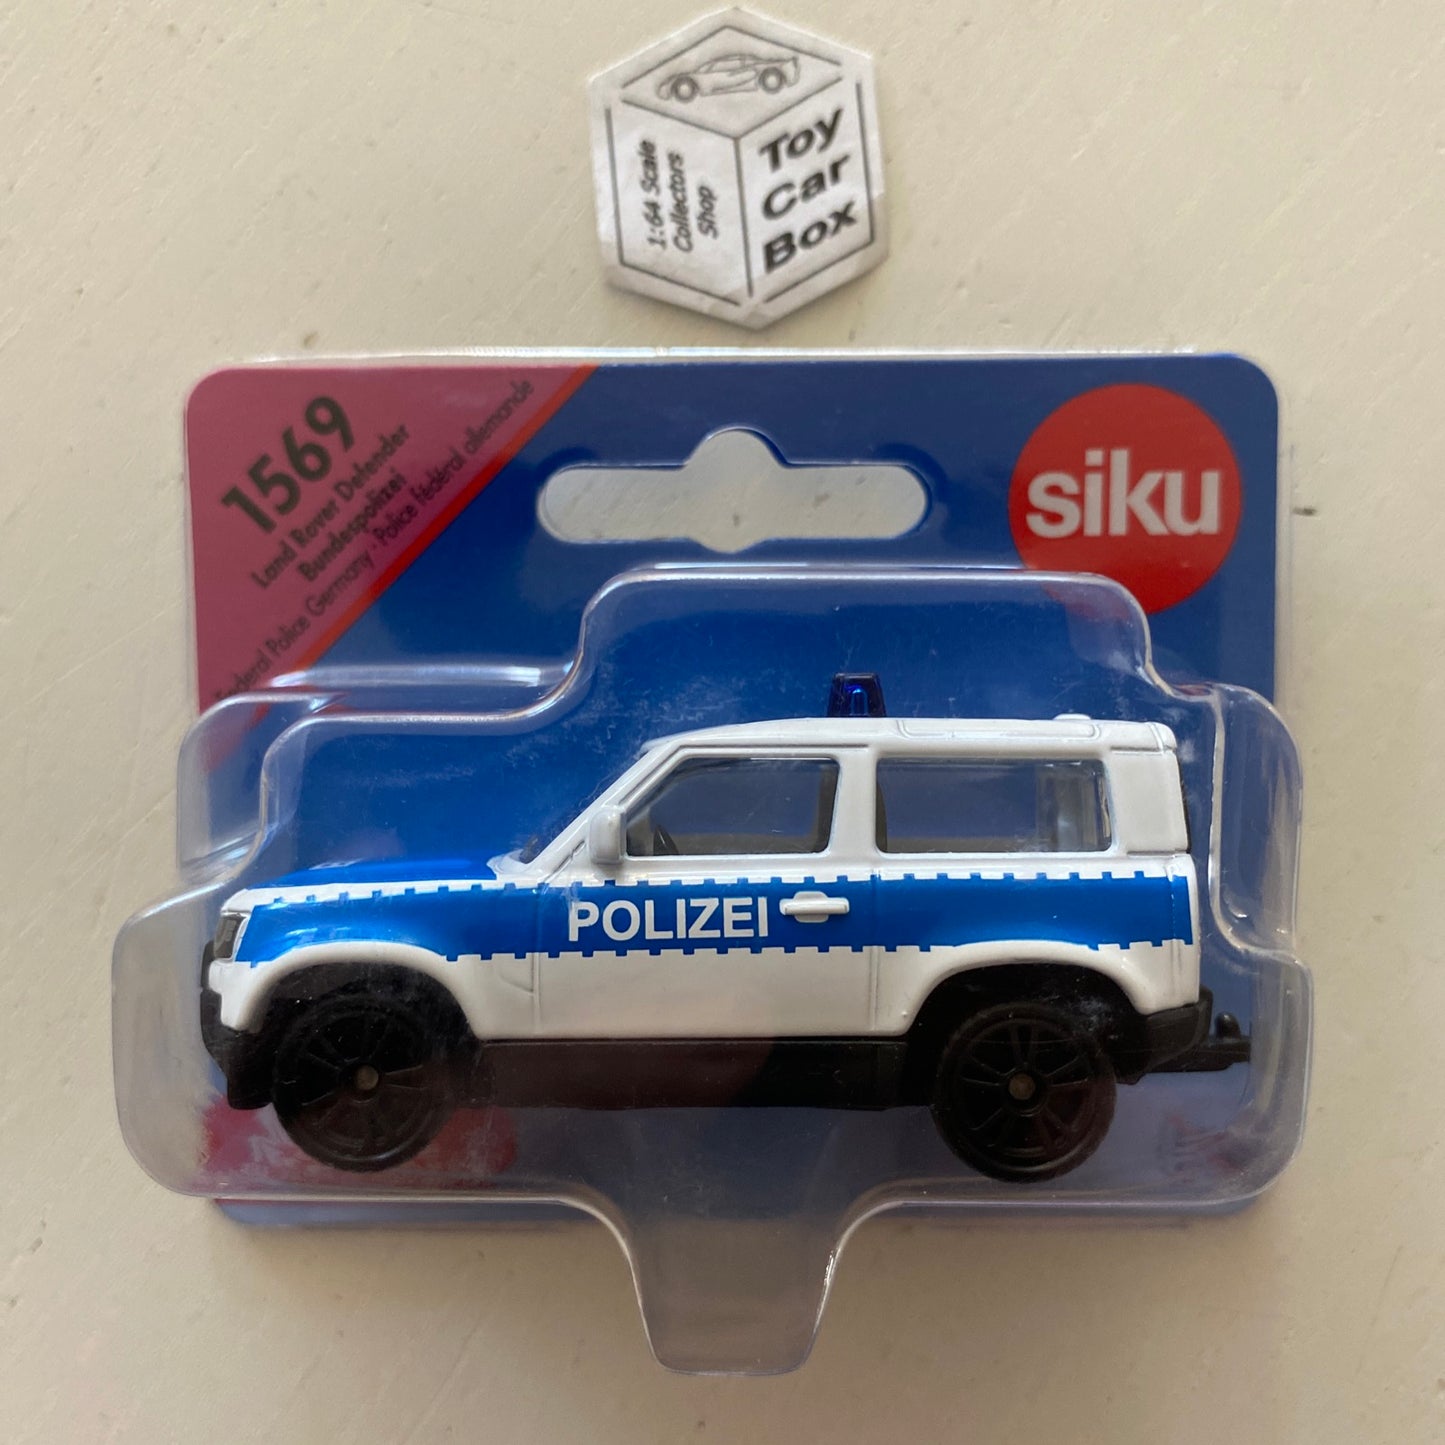 SIKU #1548 - Land Rover Defender 90 (White Polizei - Approx. 1:63 scale) E50